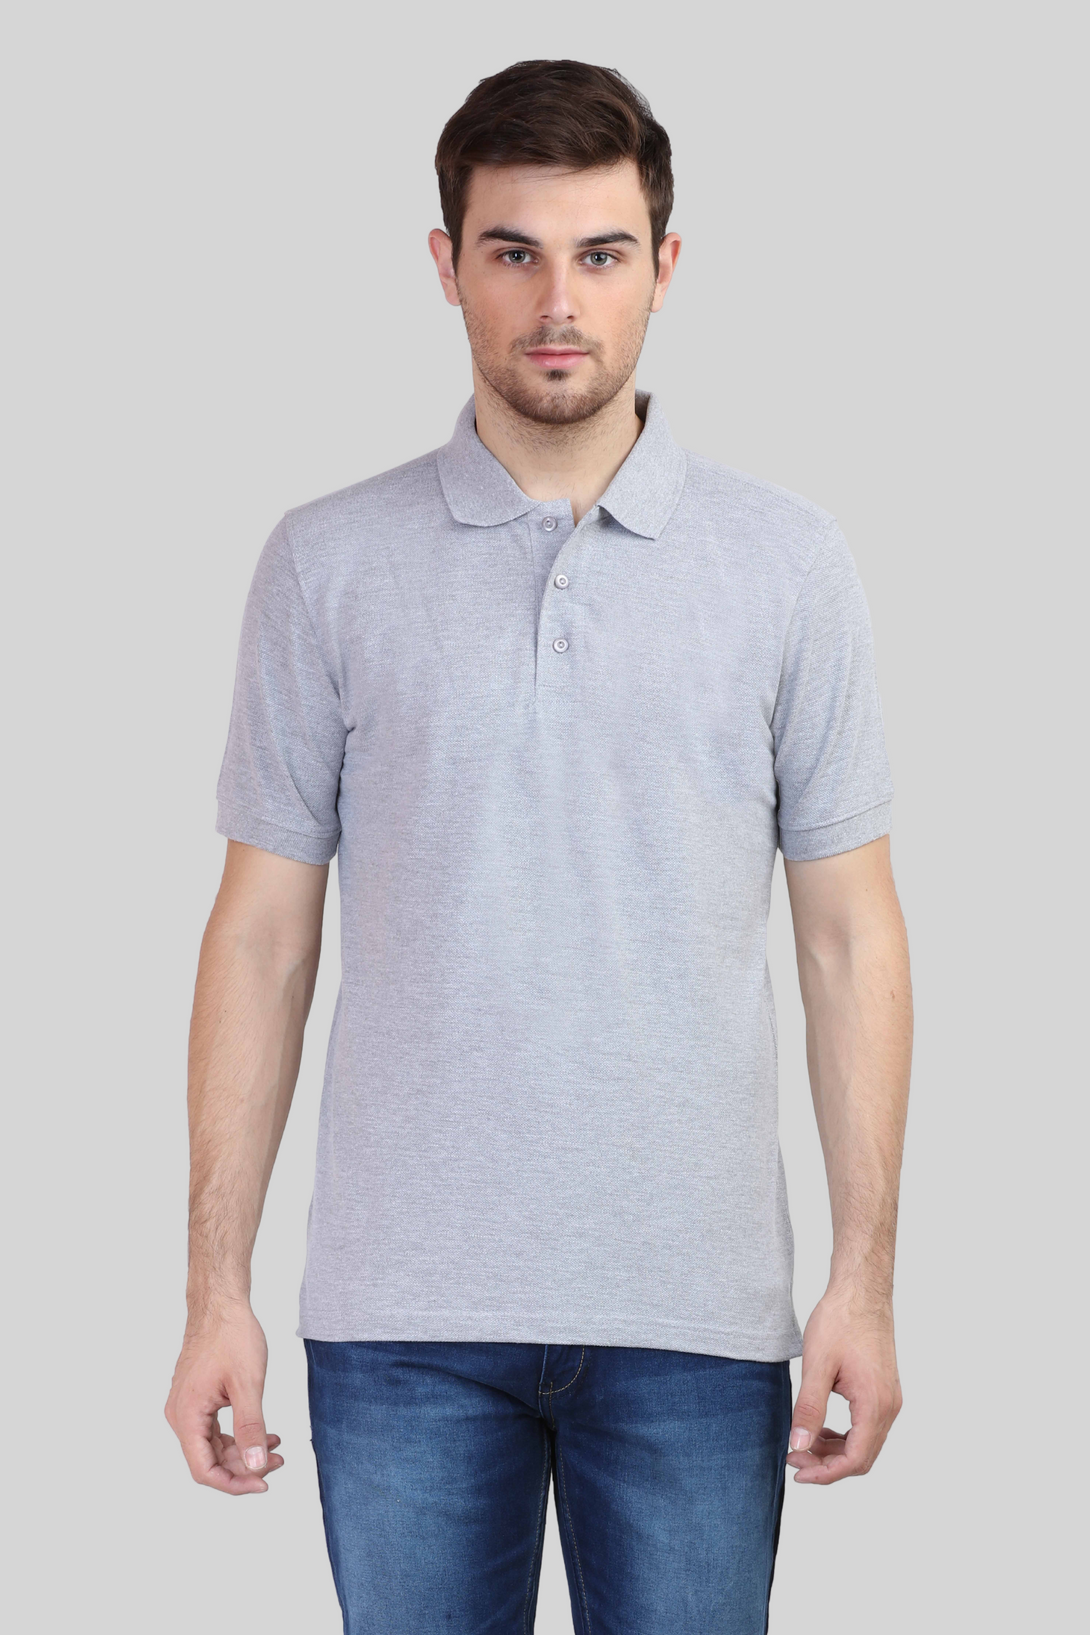 Grey Melange Polo T-Shirt For Men - WowWaves - 1